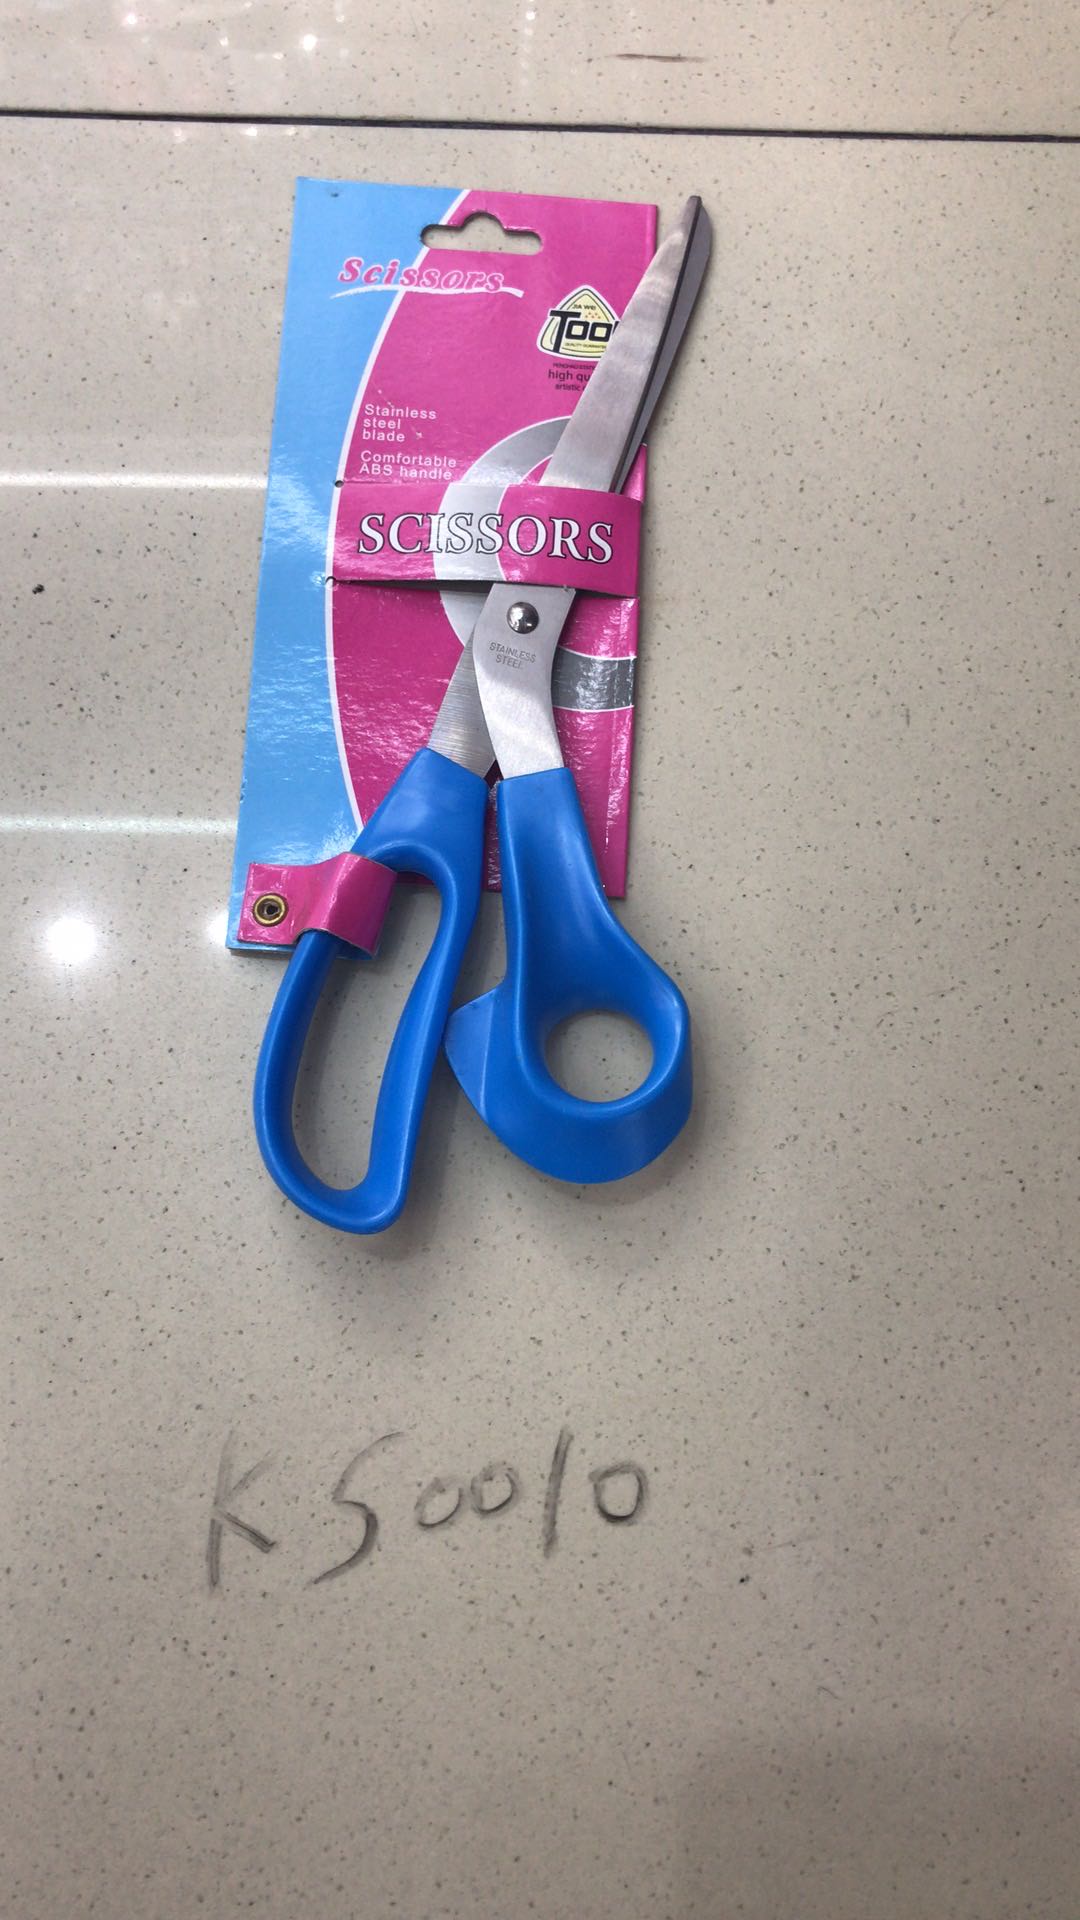 手工剪刀儿童安全不锈钢小剪刀圆头剪纸剪子学生家用小号便携式随身携带